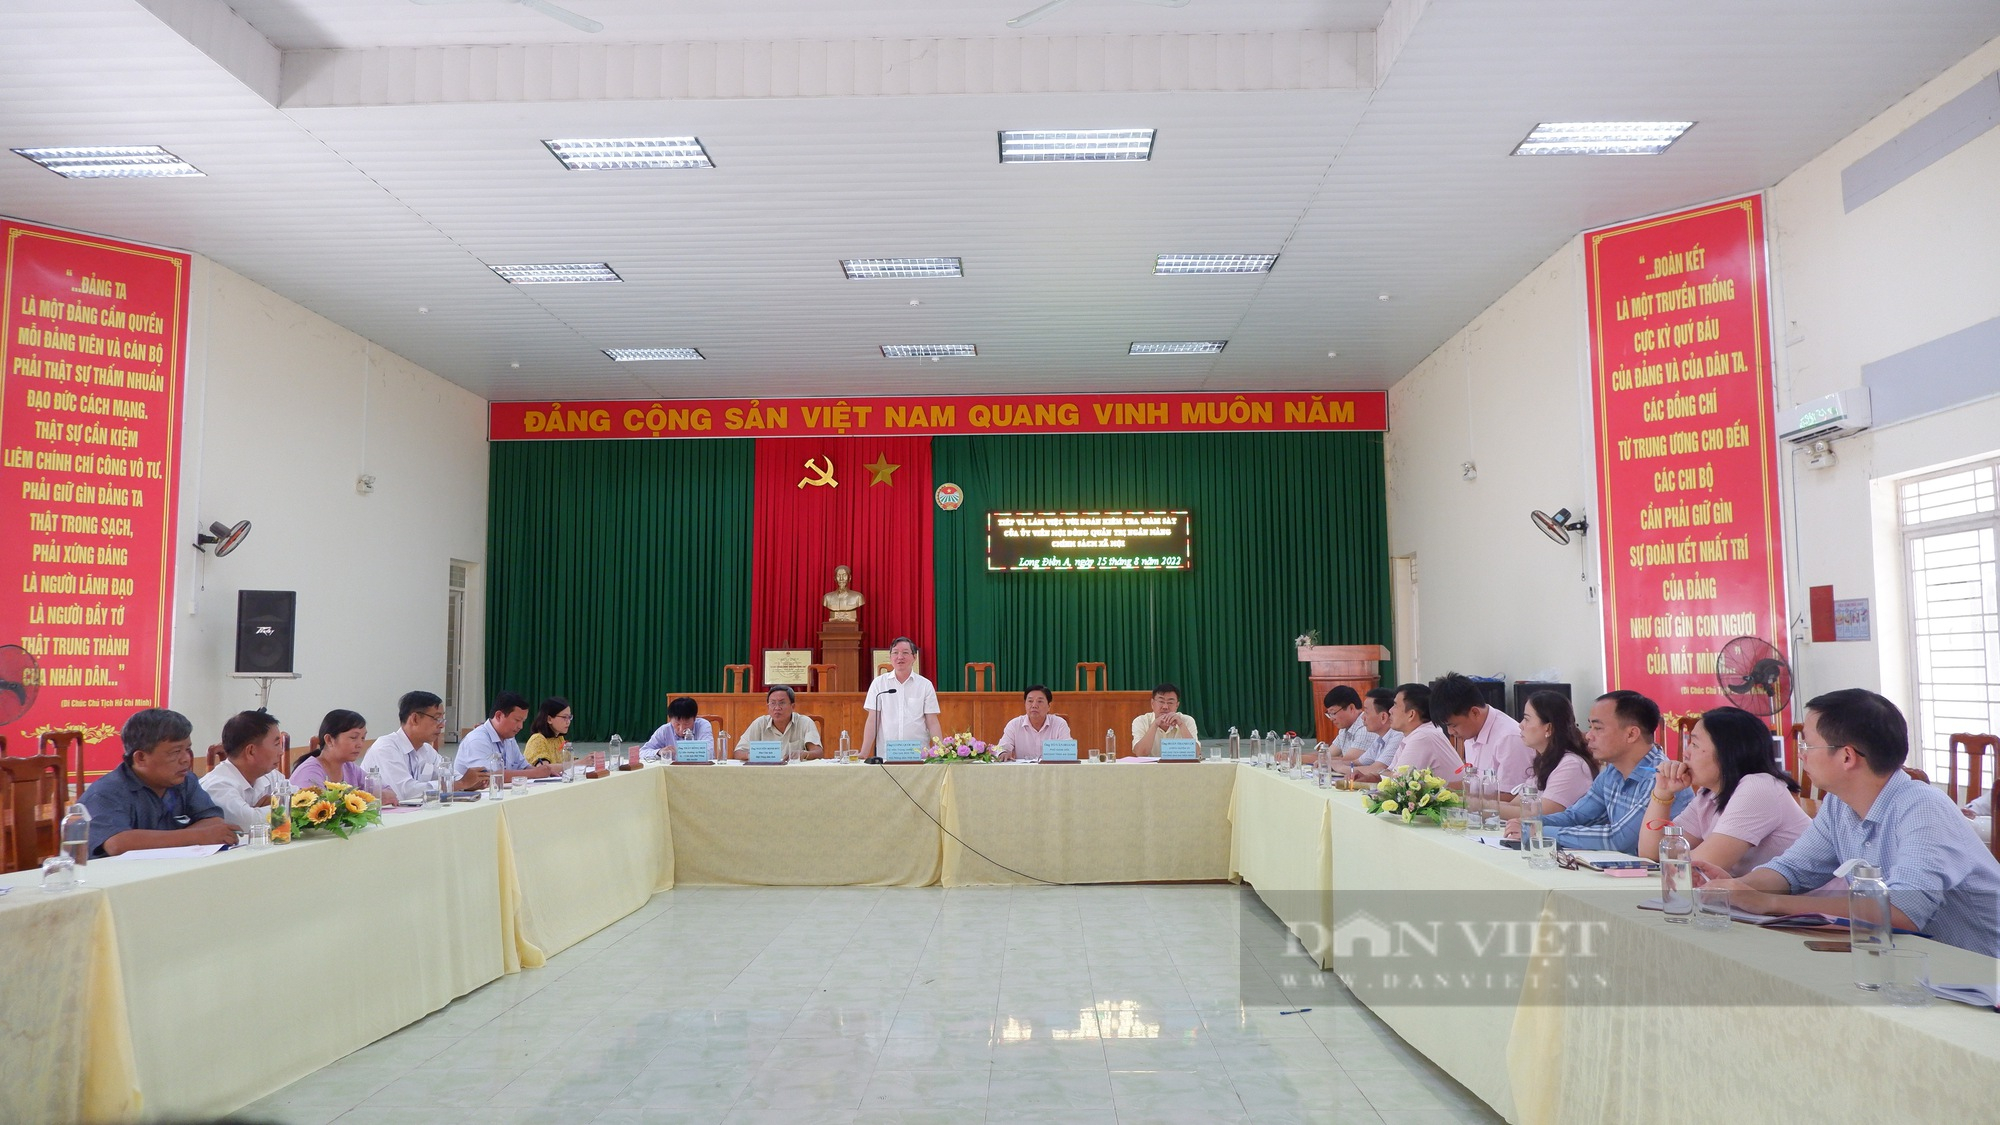 Chủ tịch Hội Nông dân Việt Nam Lương Quốc Đoàn kiểm tra, giám sát hoạt động tín dụng chính sách xã hội tại An Giang - Ảnh 2.